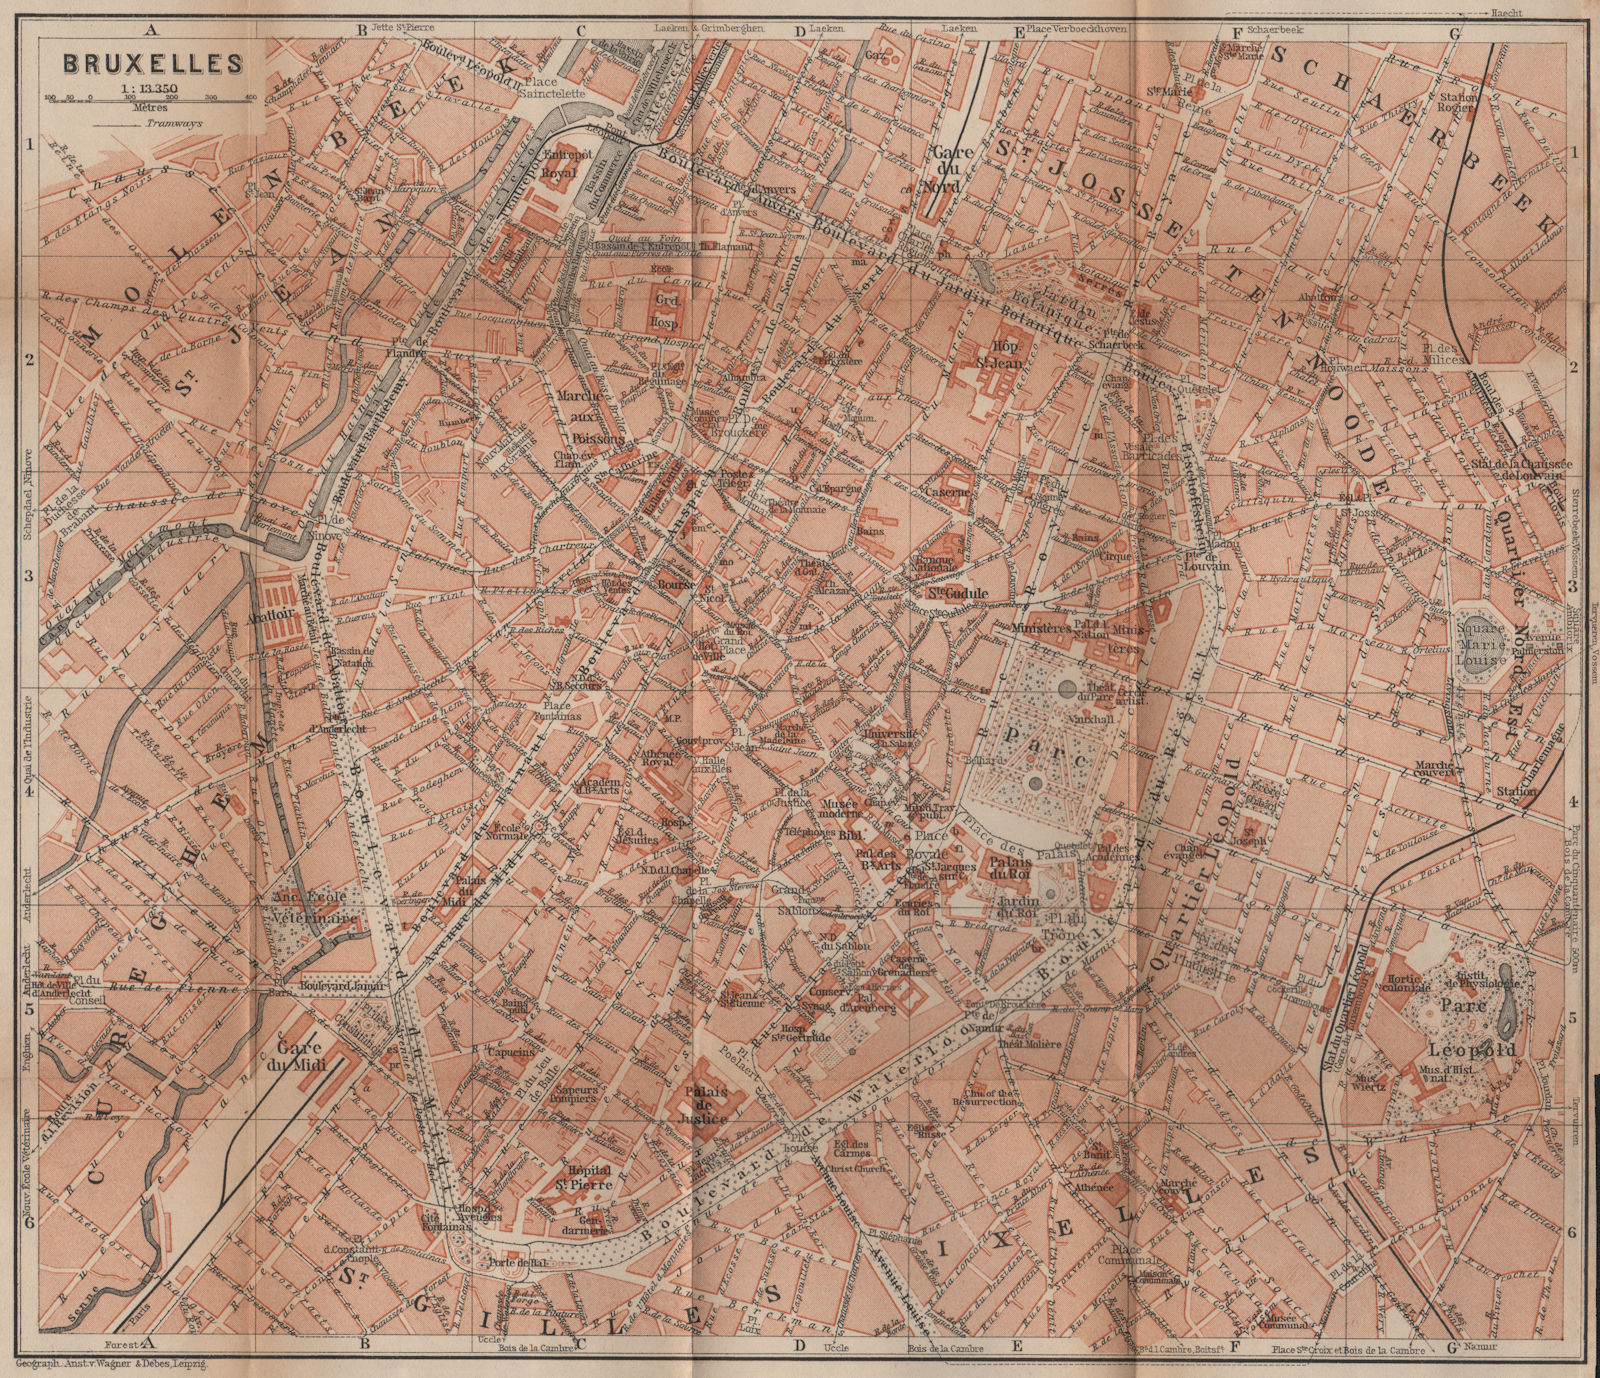 BRUSSELS BRUXELLES BRUSSEL town city plan de la ville. Belgium carte 1905 map